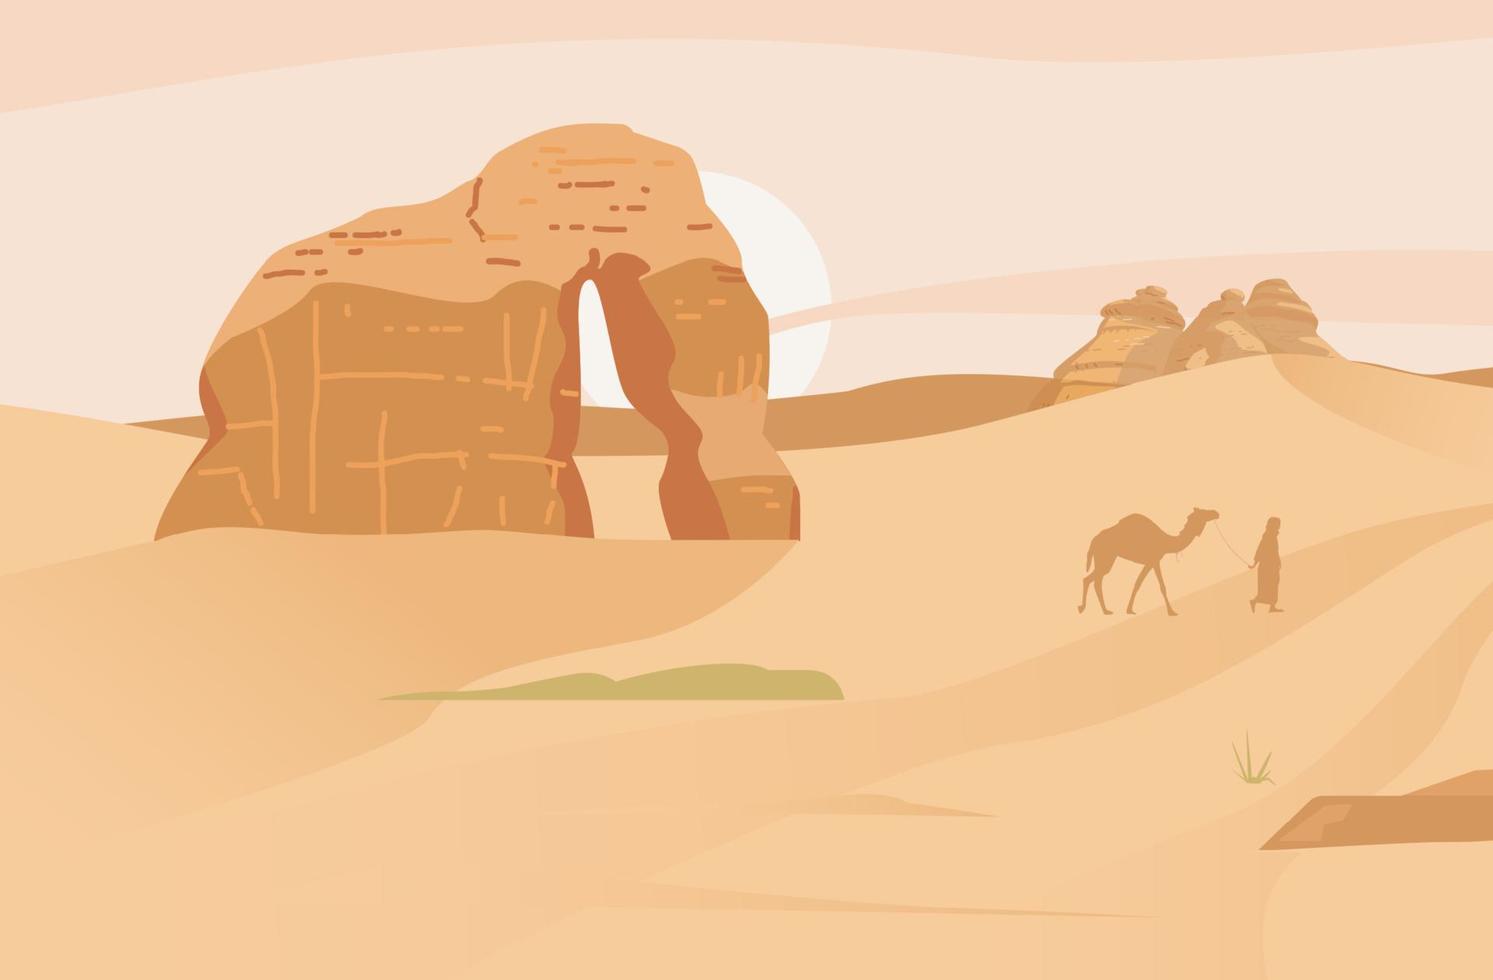 paysage désertique d'arabie saoudite avec rocher d'éléphant. hégra ancien village. rochers de sable. illustration vectorielle plane. vecteur